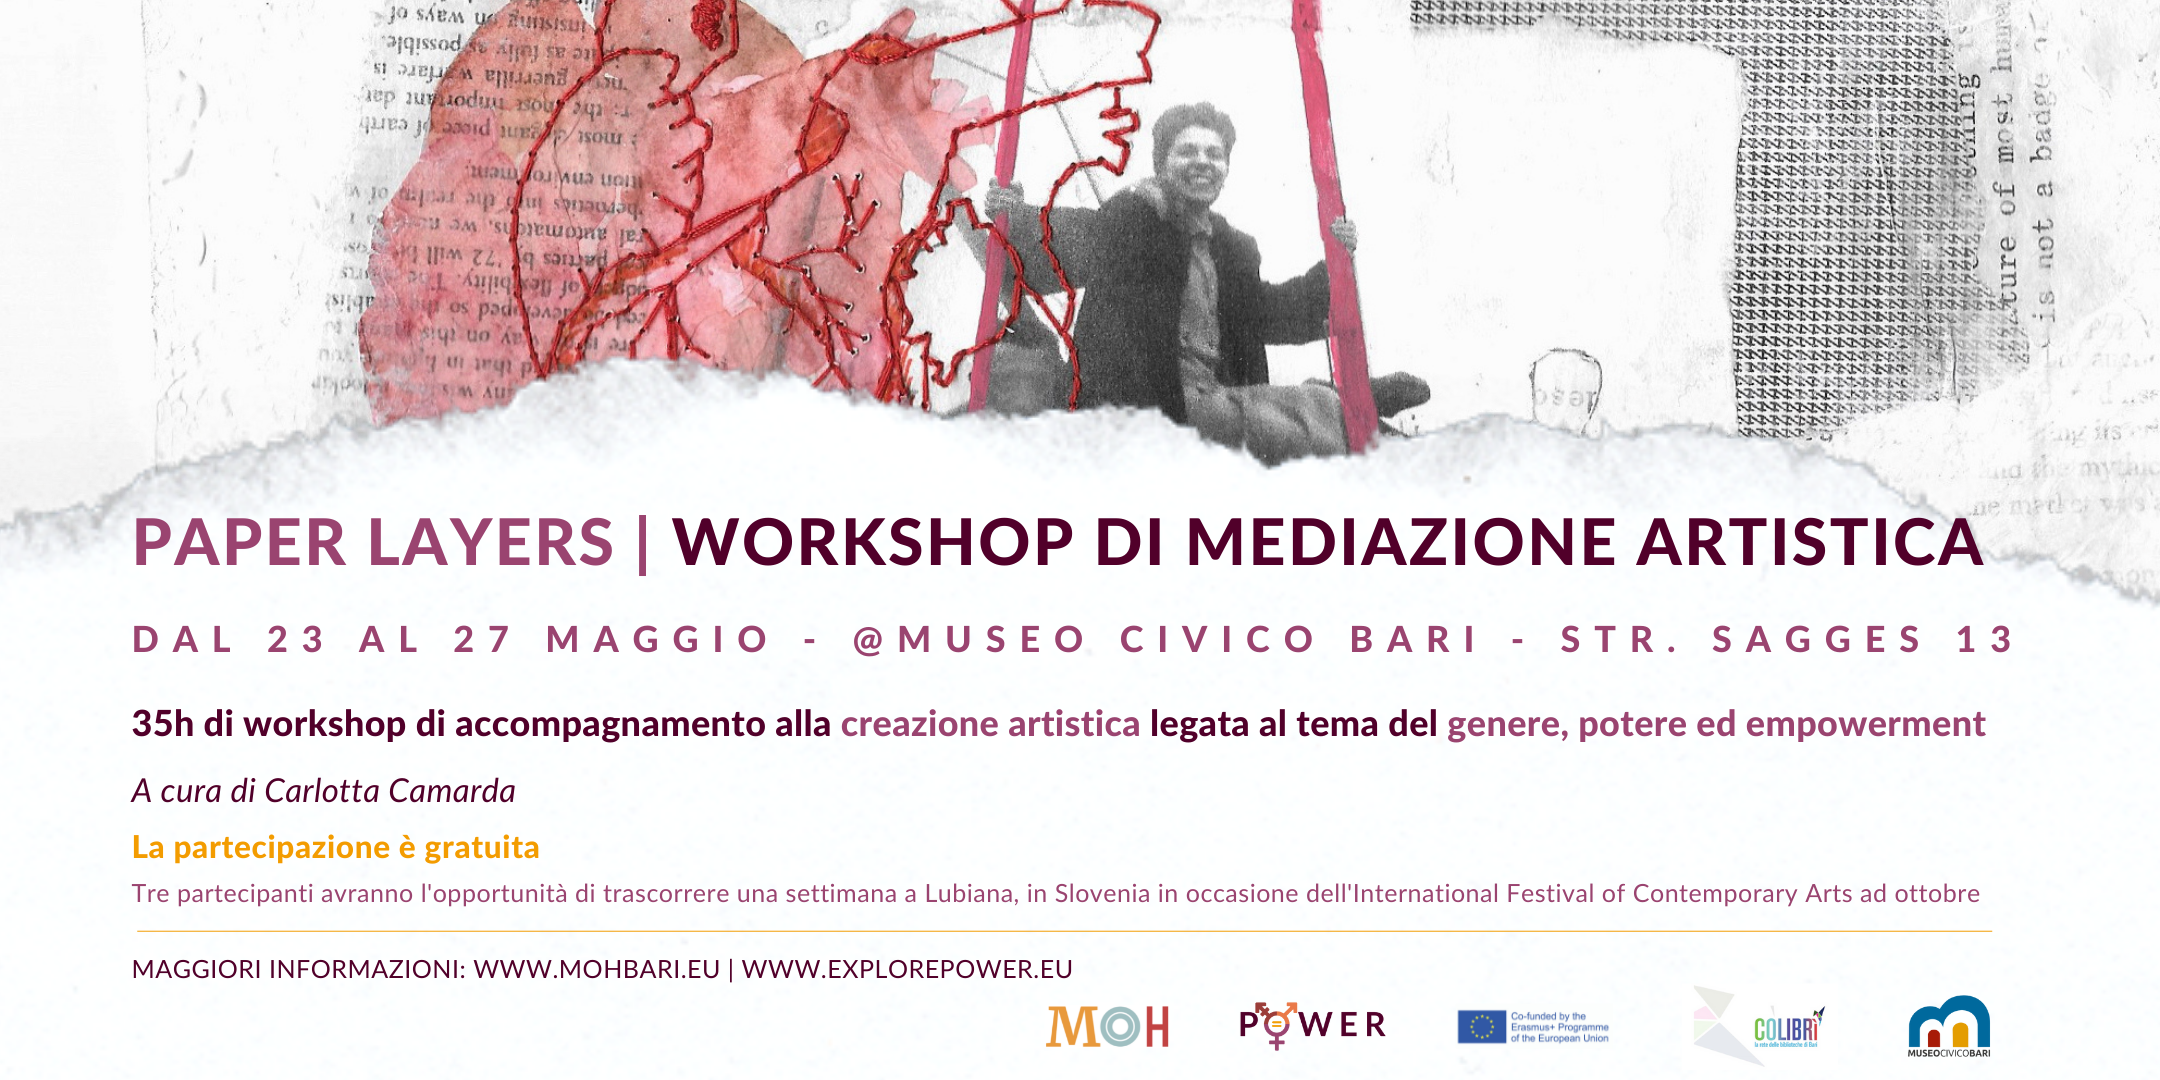 Al momento stai visualizzando Paper Layers: workshop di mediazione artistica @Museo Civico di Bari | Dal 23 al 27 maggio